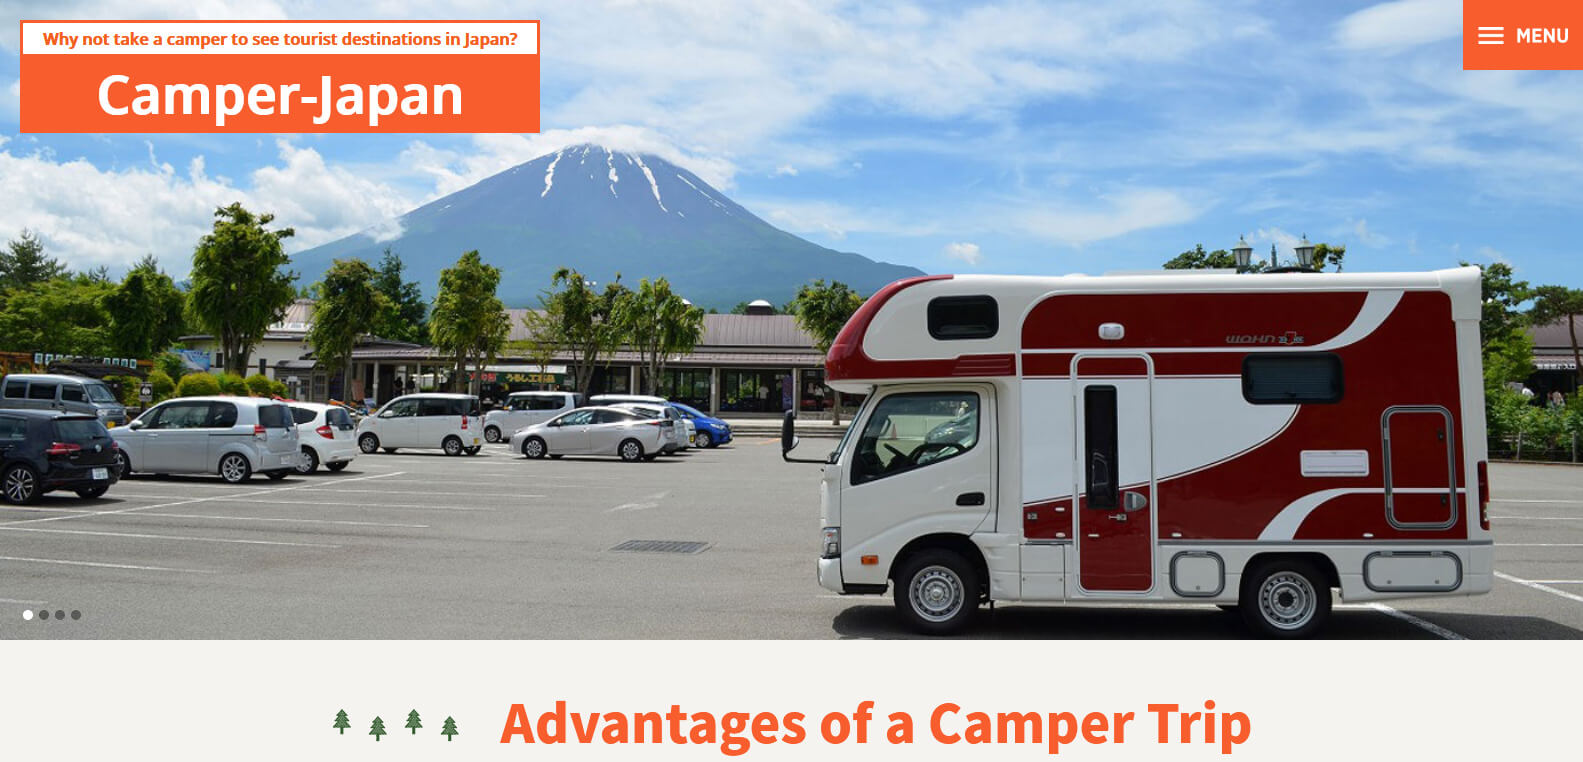 Camper-Japan